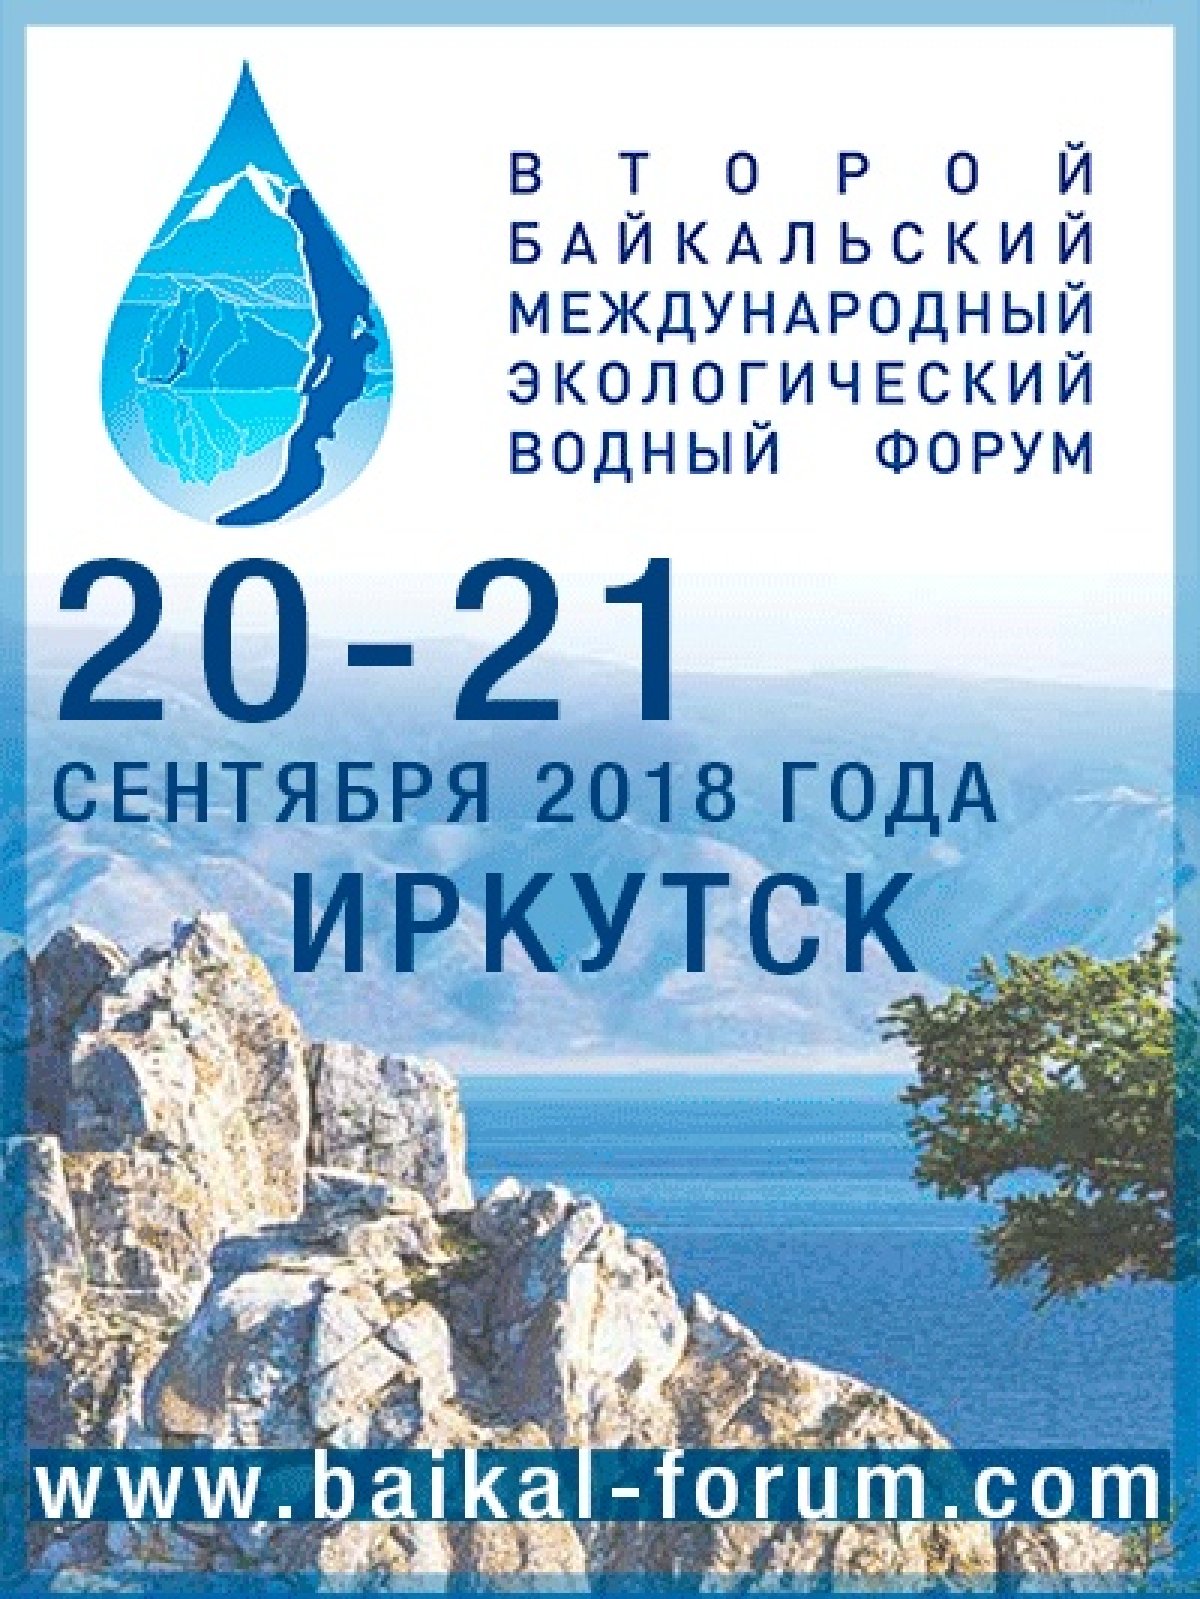 С 20 по 21 сентября 2018 года в Иркутске пройдет Второй Байкальский международный экологический водный форум, организатором которого выступает Правительство Иркутской области. Девиз предстоящего мероприятия: «Байкал – источник жизни».